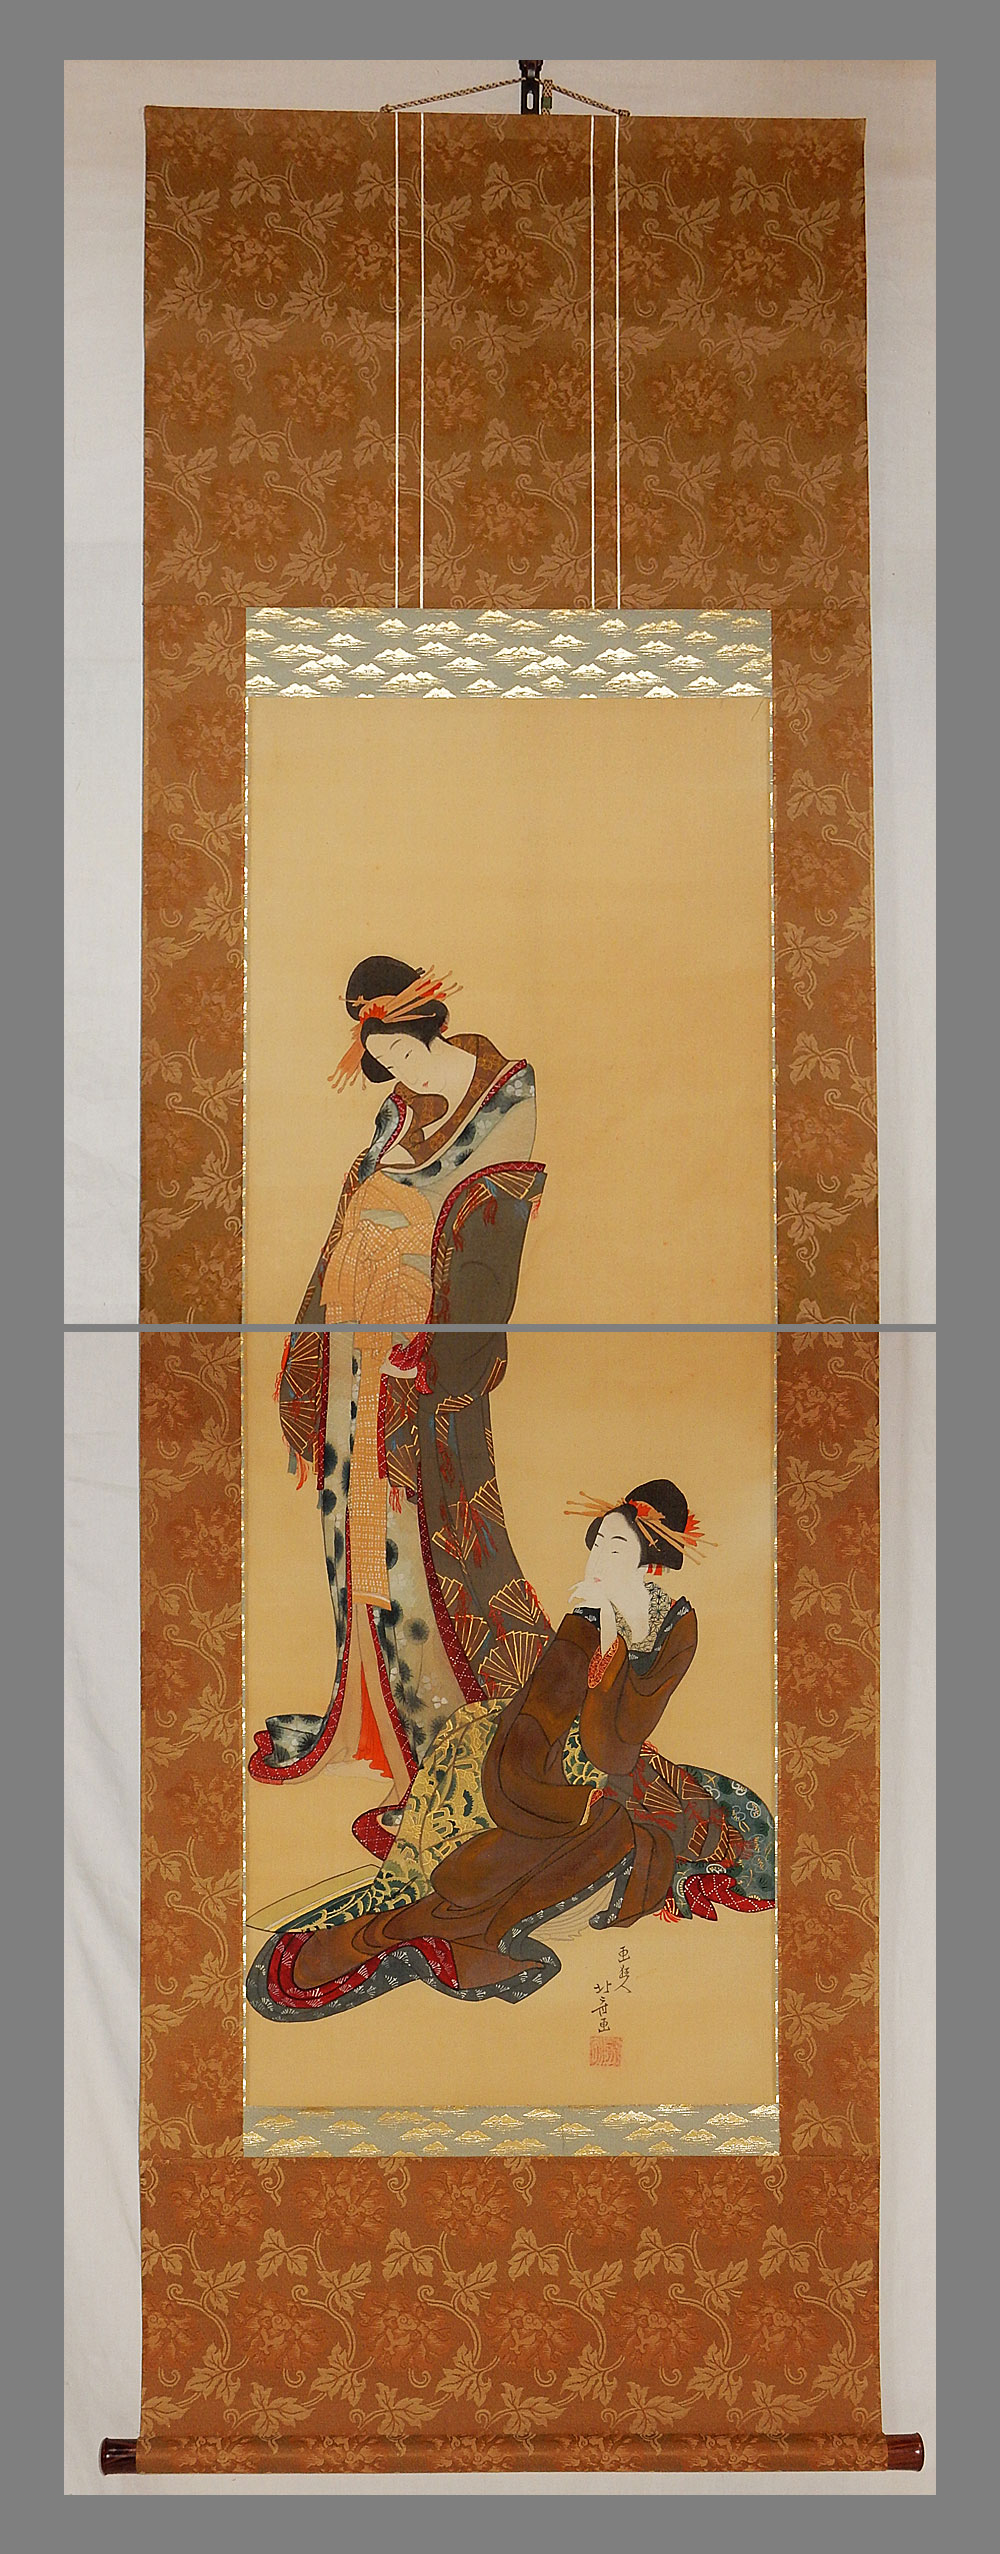 211-555cm模写 葛飾北斎 山水人物画 肉筆 掛軸 江戸時代 - 工芸品